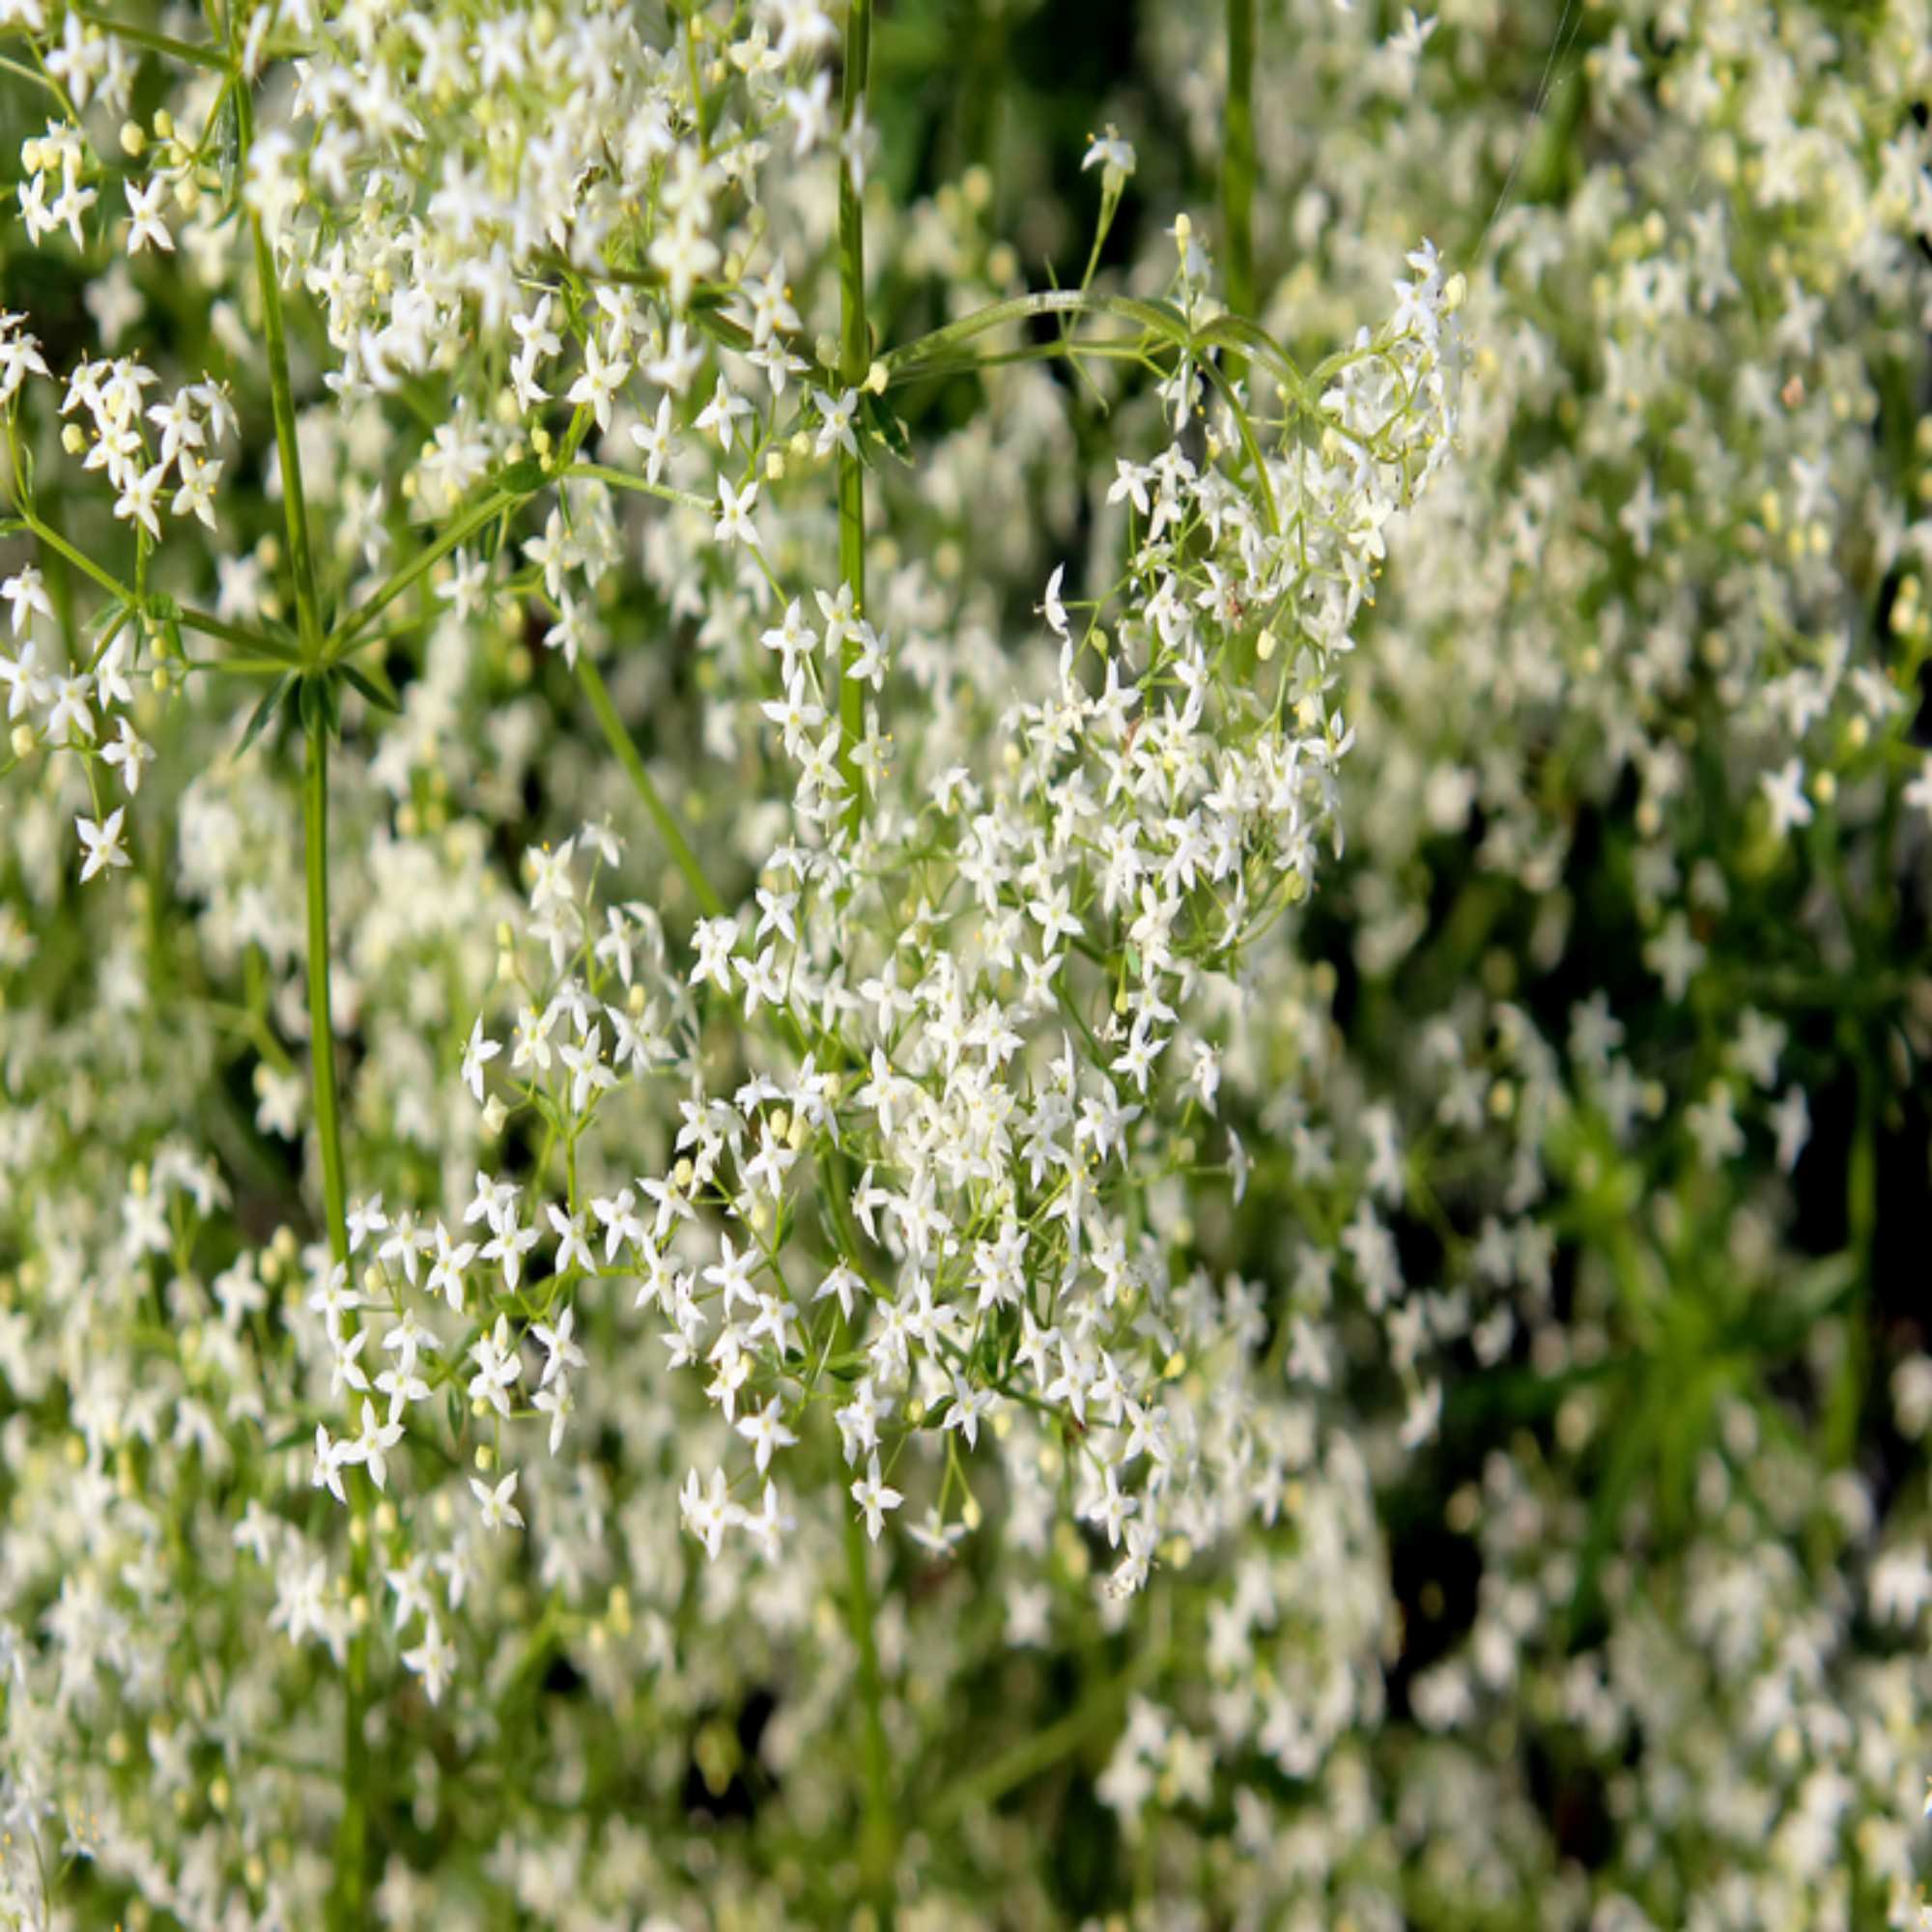 White Wildflowers